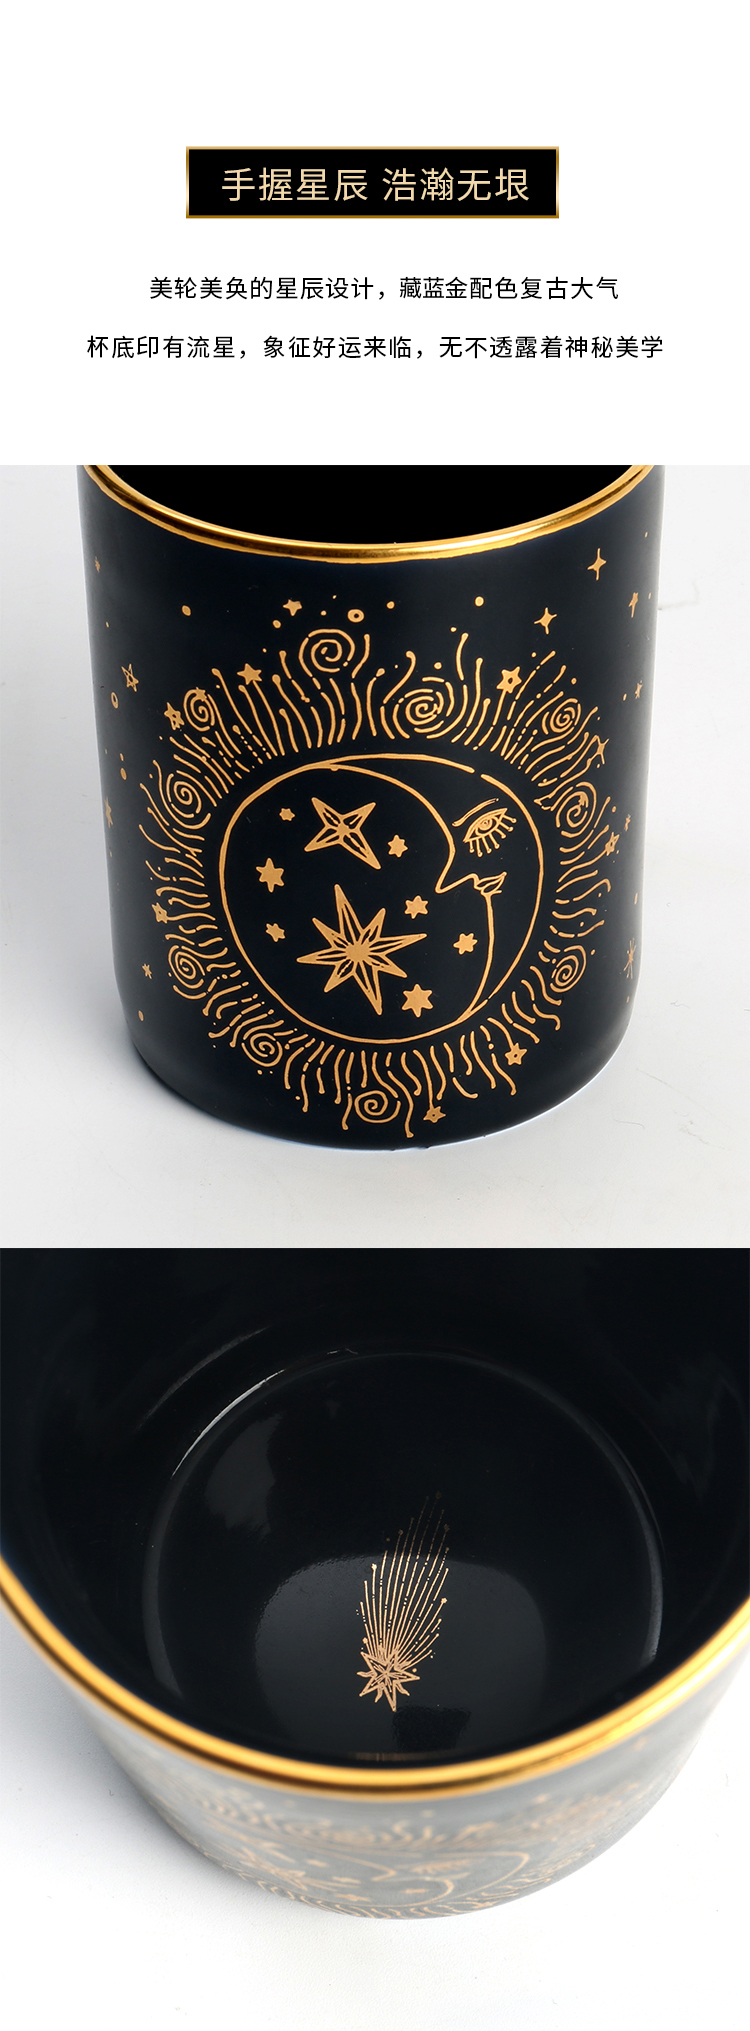 野兽派星辰马克杯陶瓷杯子(图1)